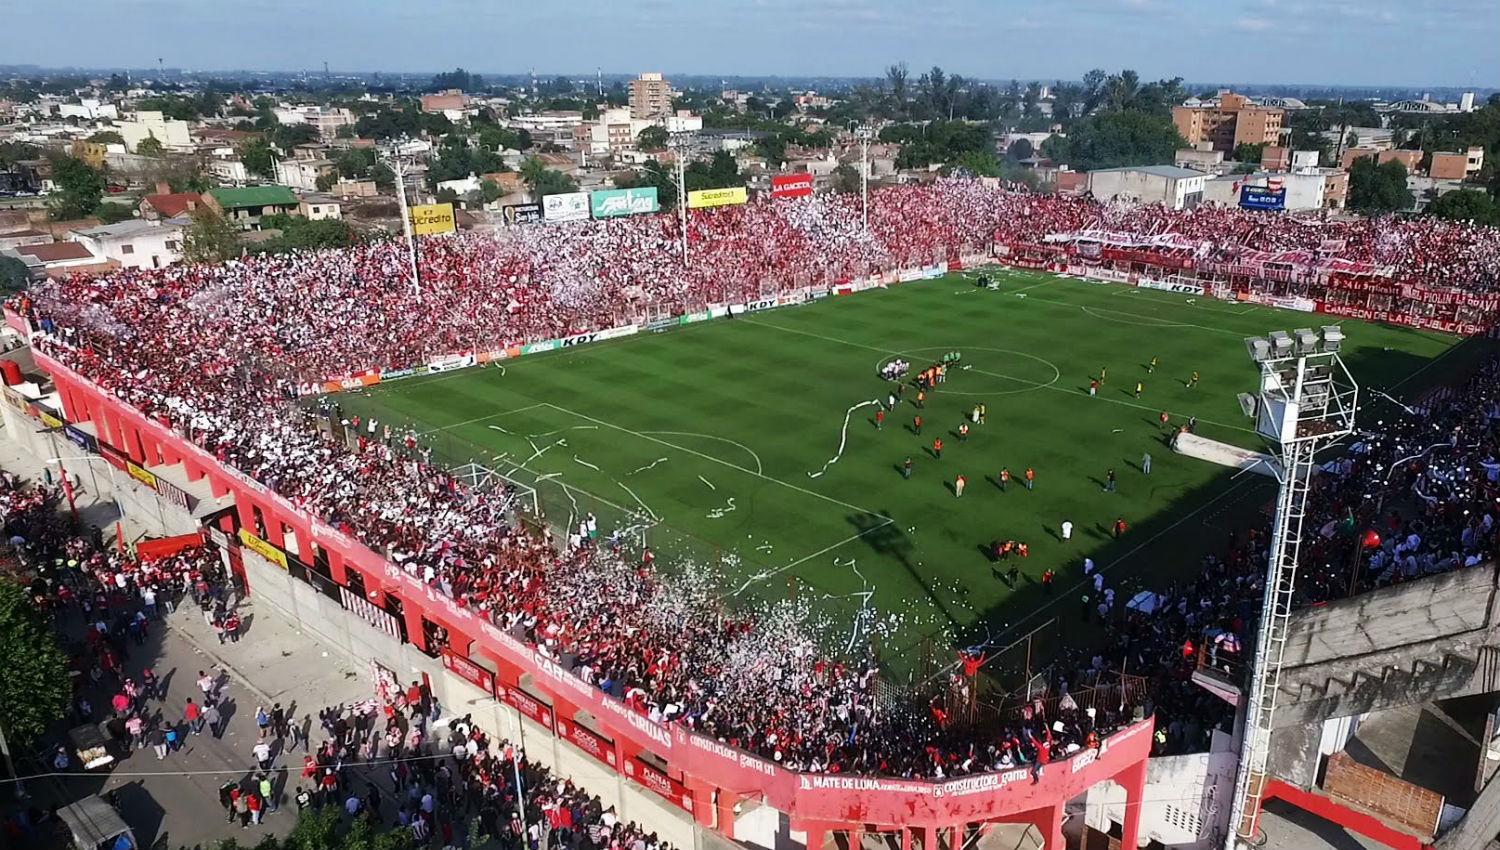 LA CIUDADELA. El estadio de San Martín explota cada vez que juega el equipo. ARCHIVO